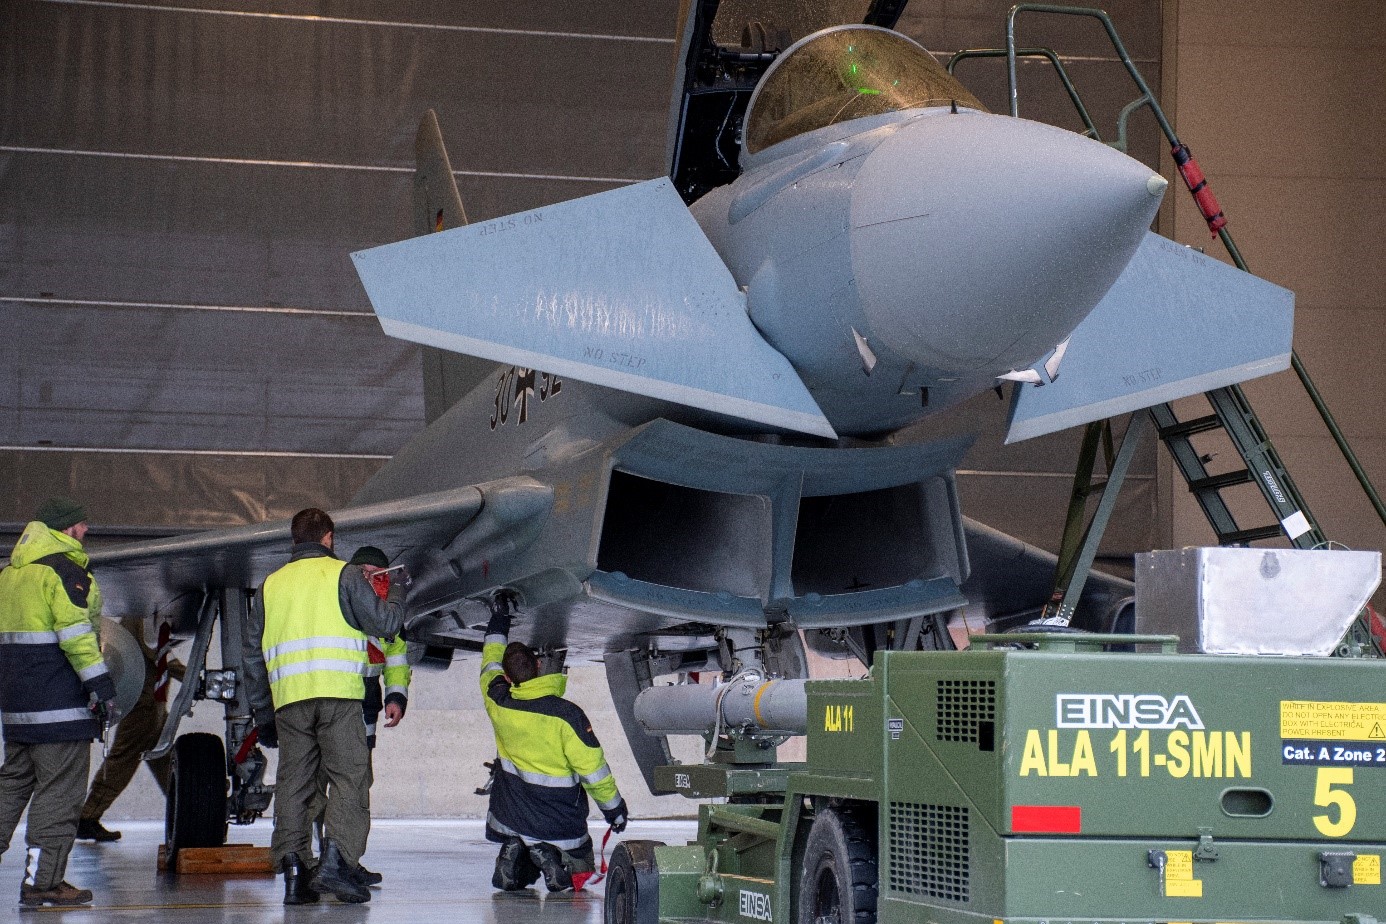 German Eurofighter in alert hangar with ESP equipment.